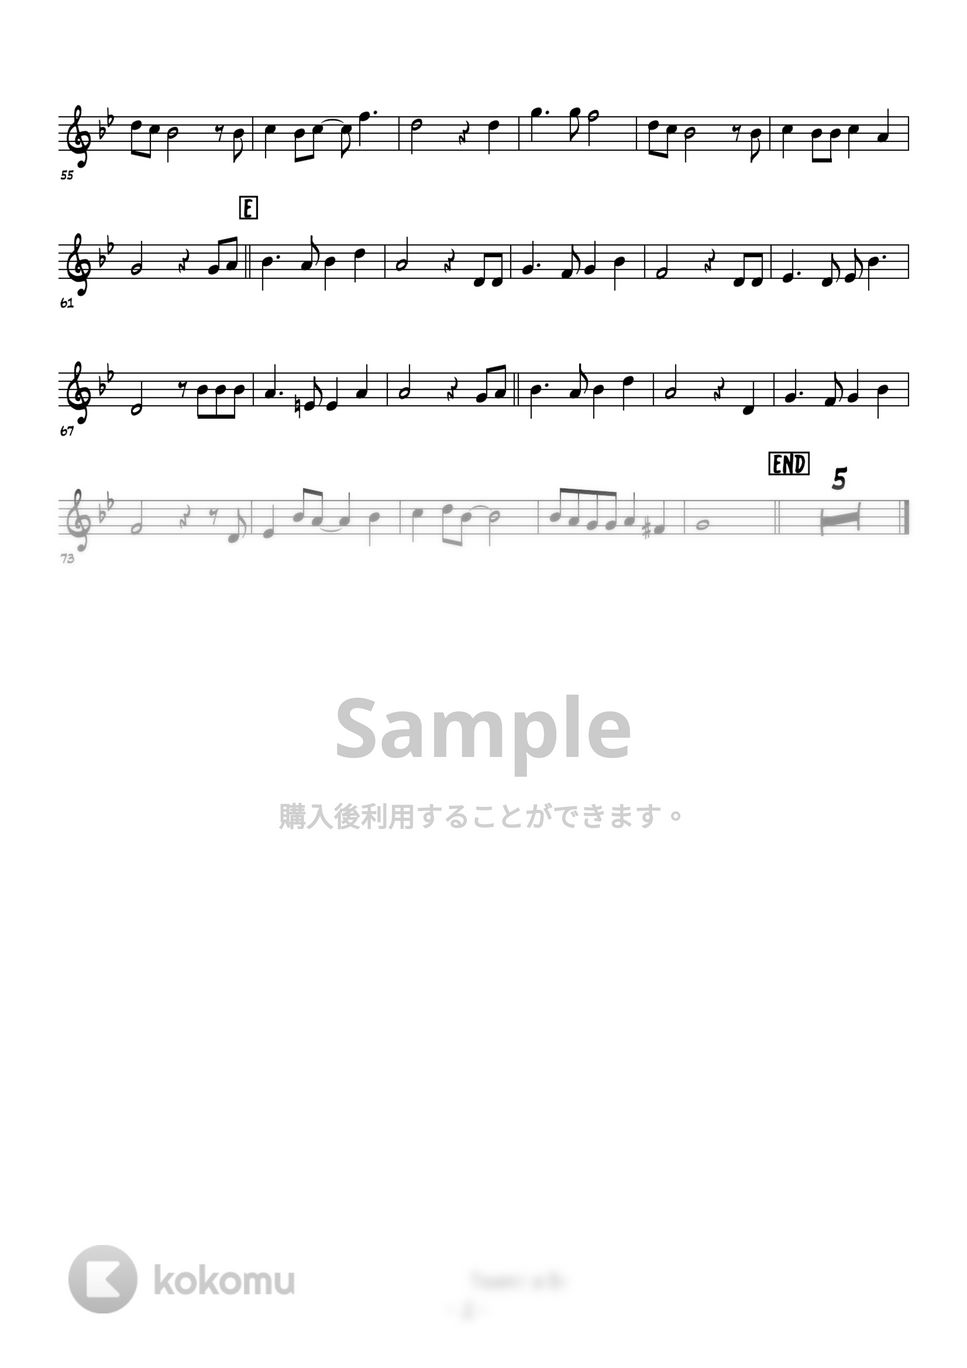 天空の城ラピュタ - 君をのせて (トランペットメロディー譜面) by 高田将利